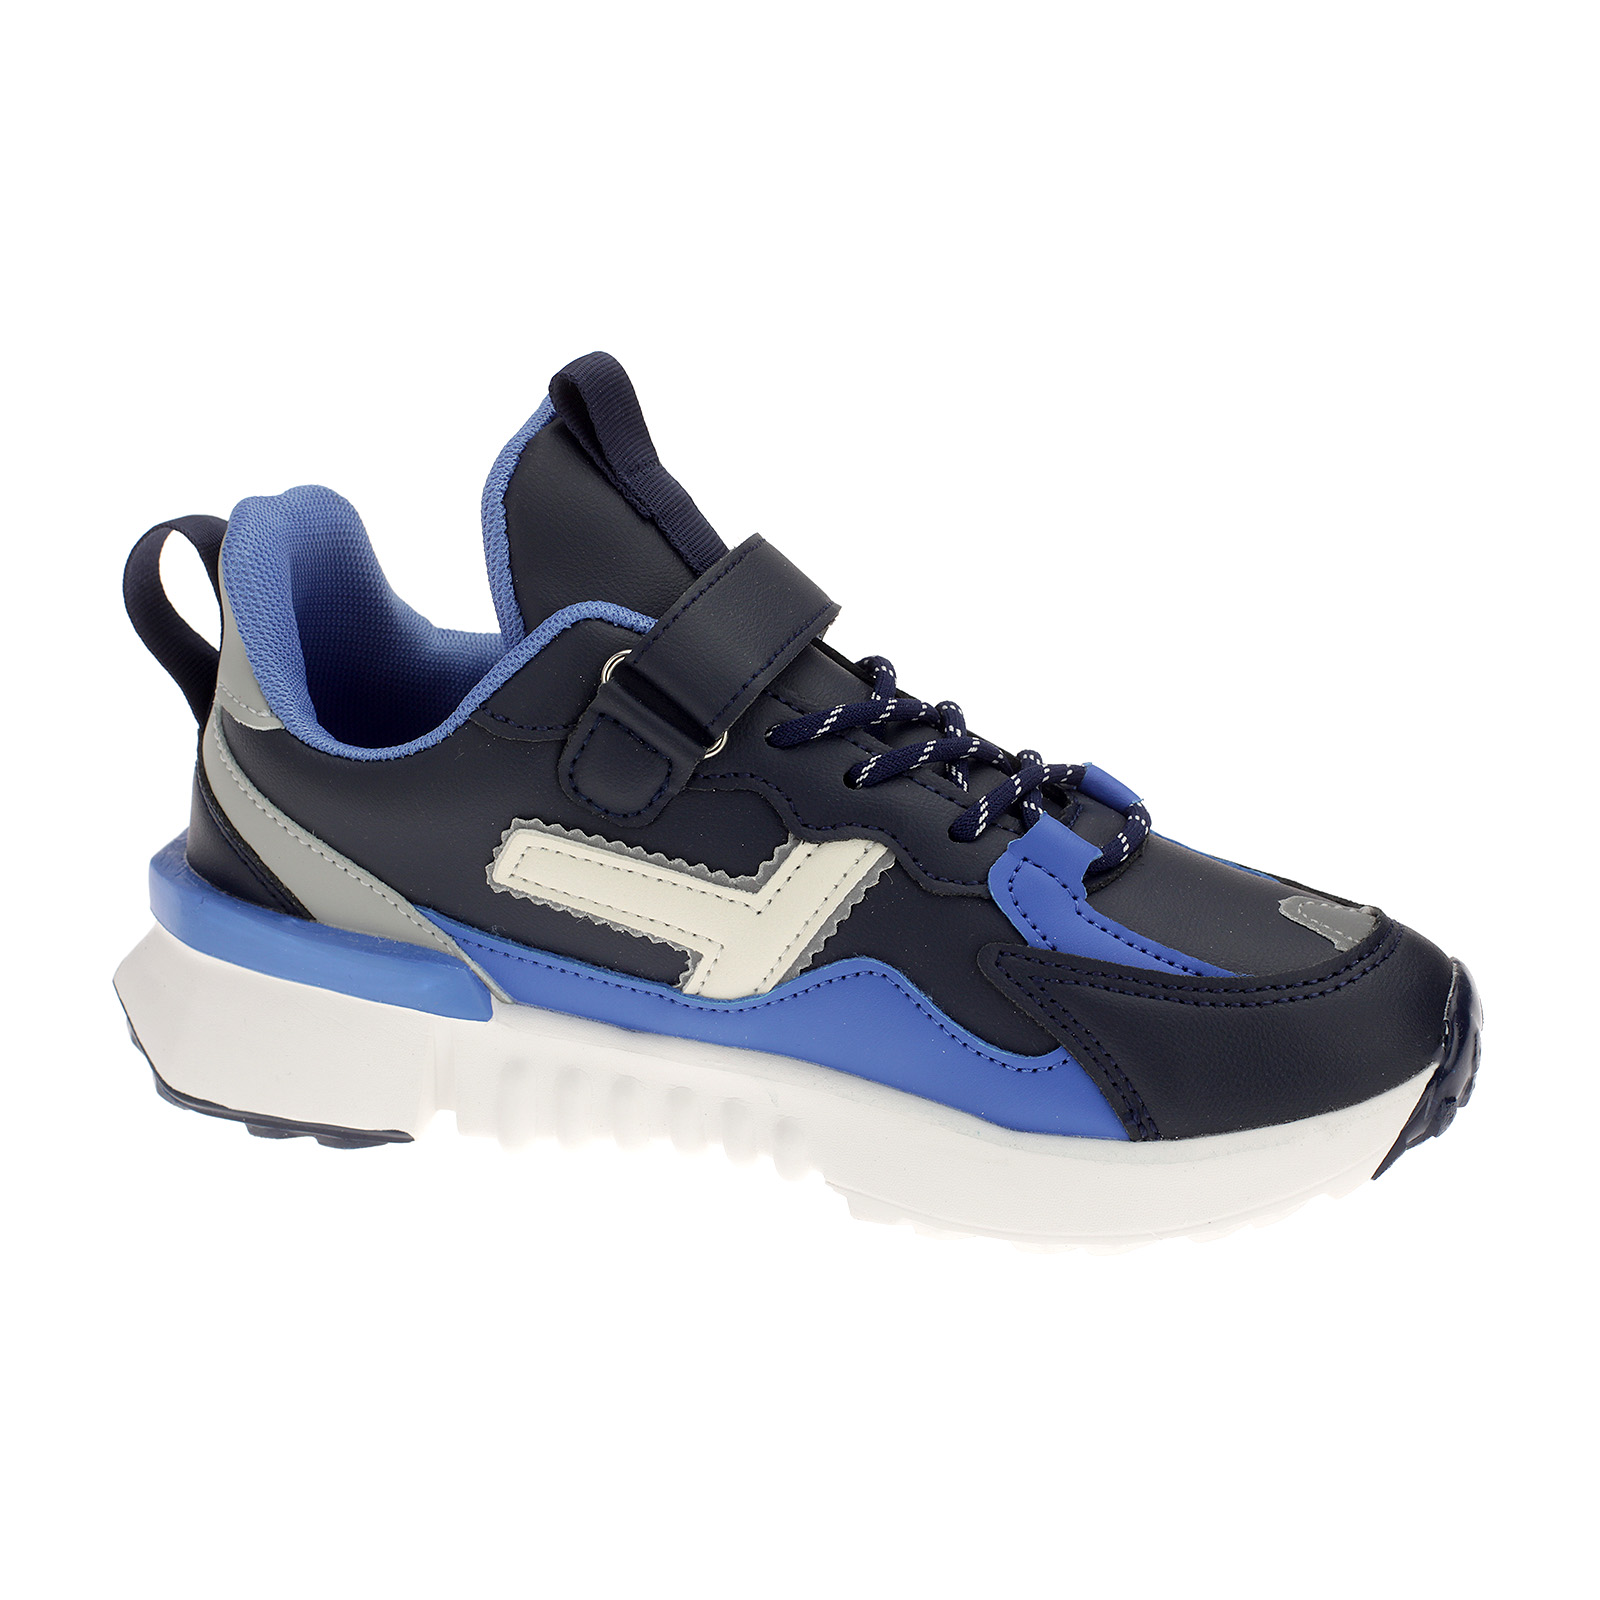 Kinderschuhe Sneaker mit Klettverschluss 4046 Navy Blau